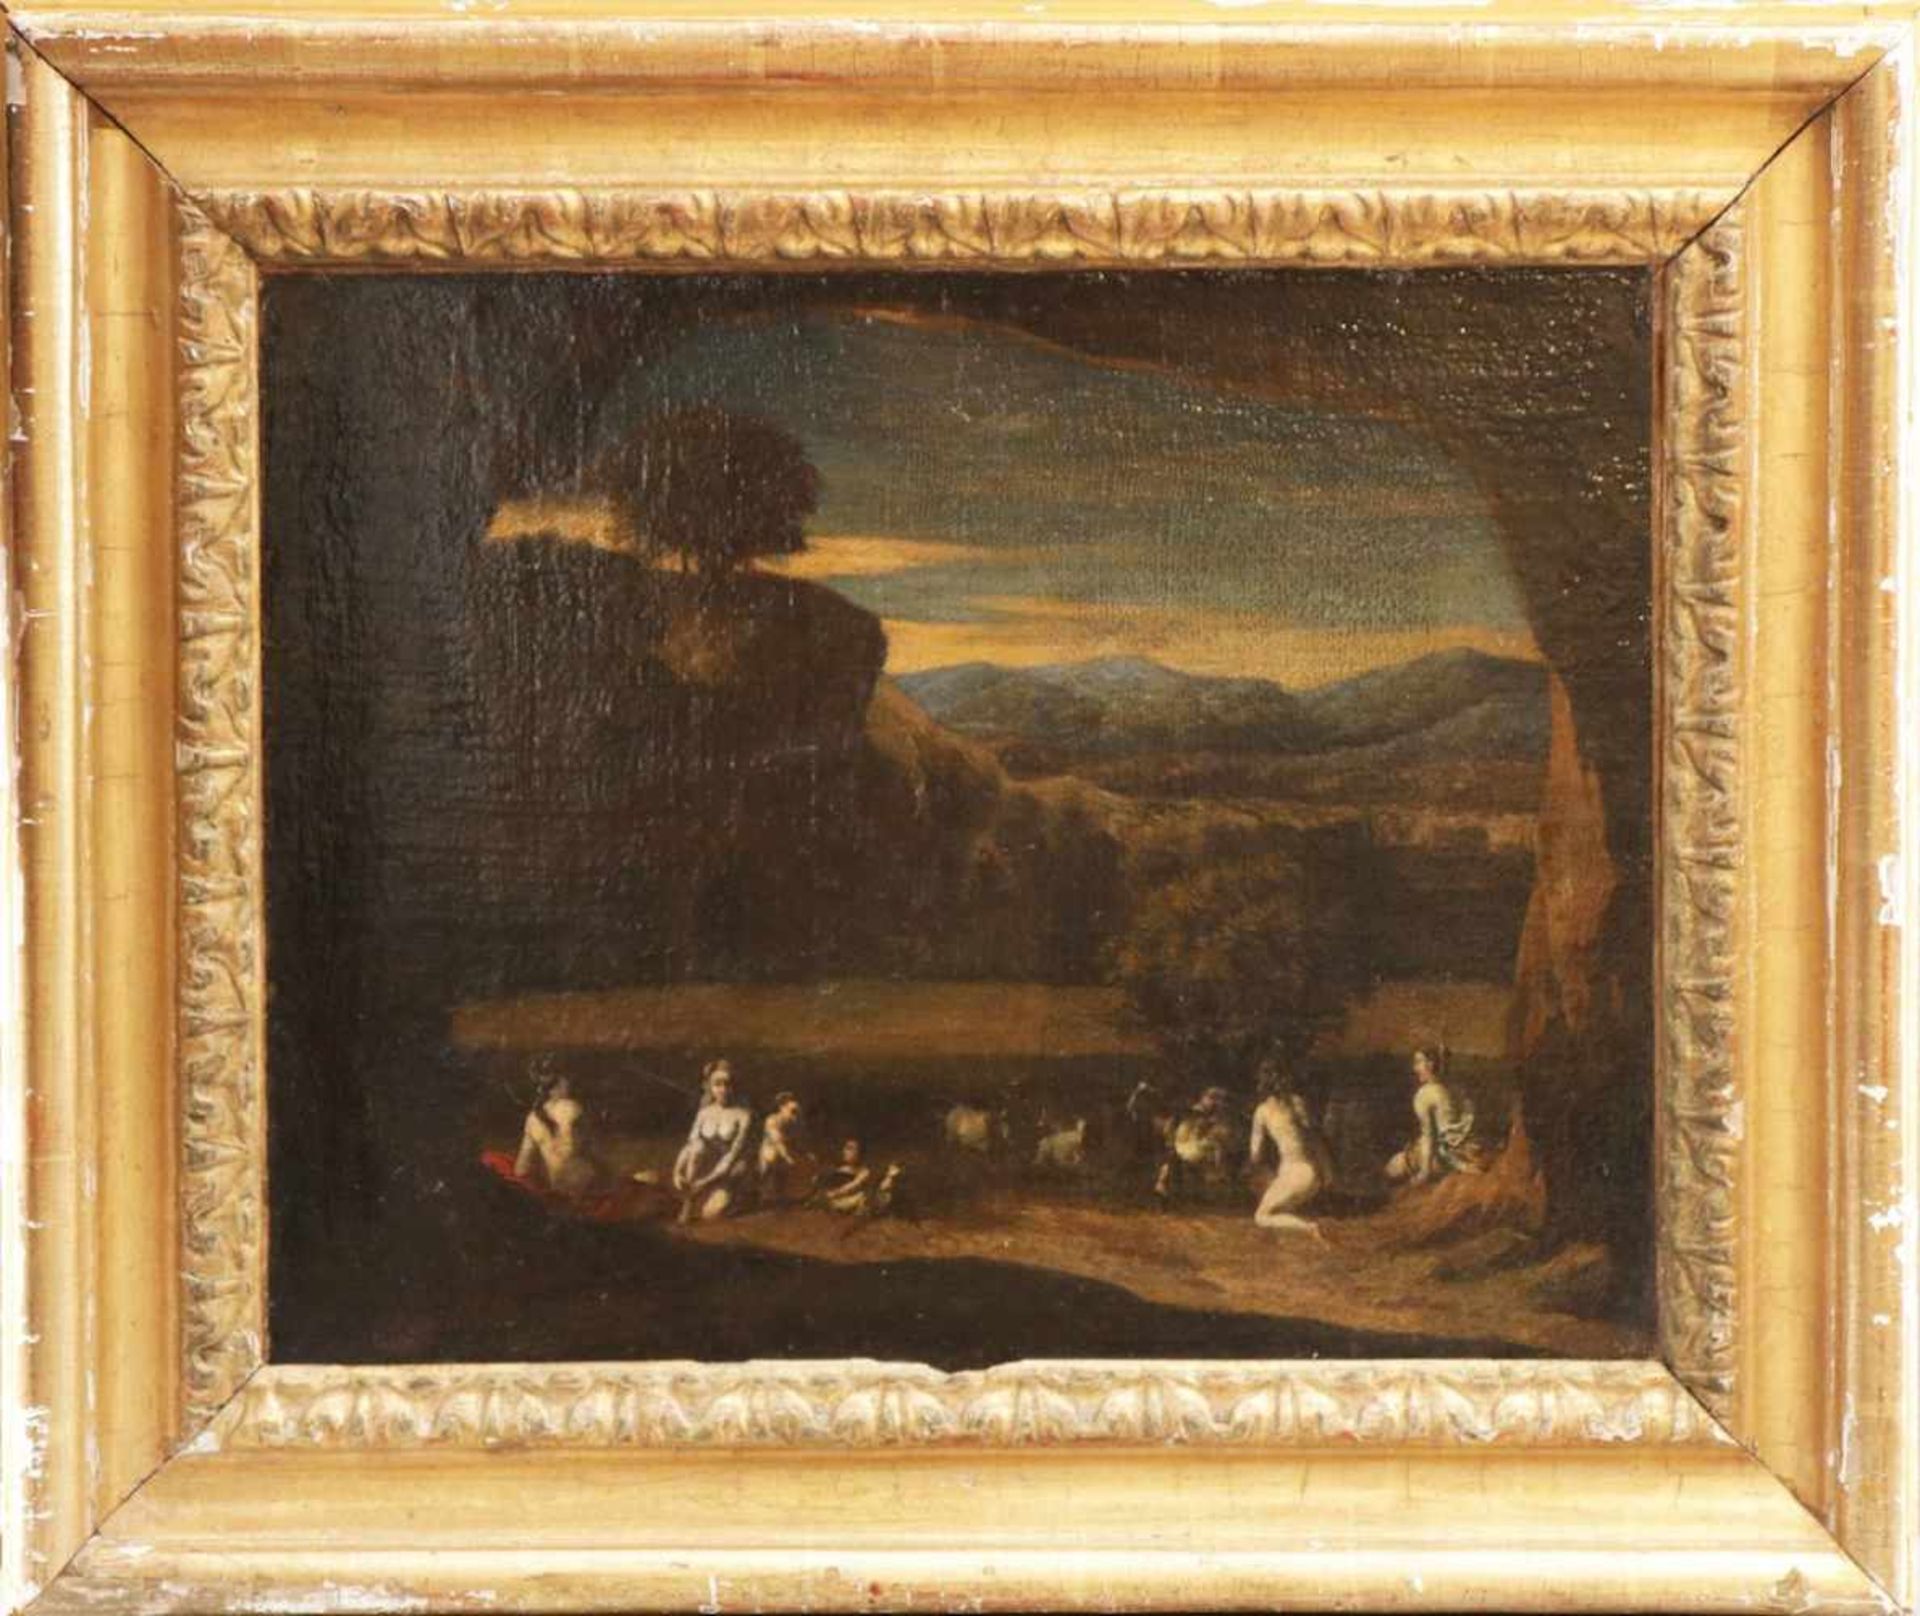 ANONYMER KÜNSTLER des 17. Jahrhunderts Öl auf Leinwand (doubliert), ¨Bukolische Landschaft¨,